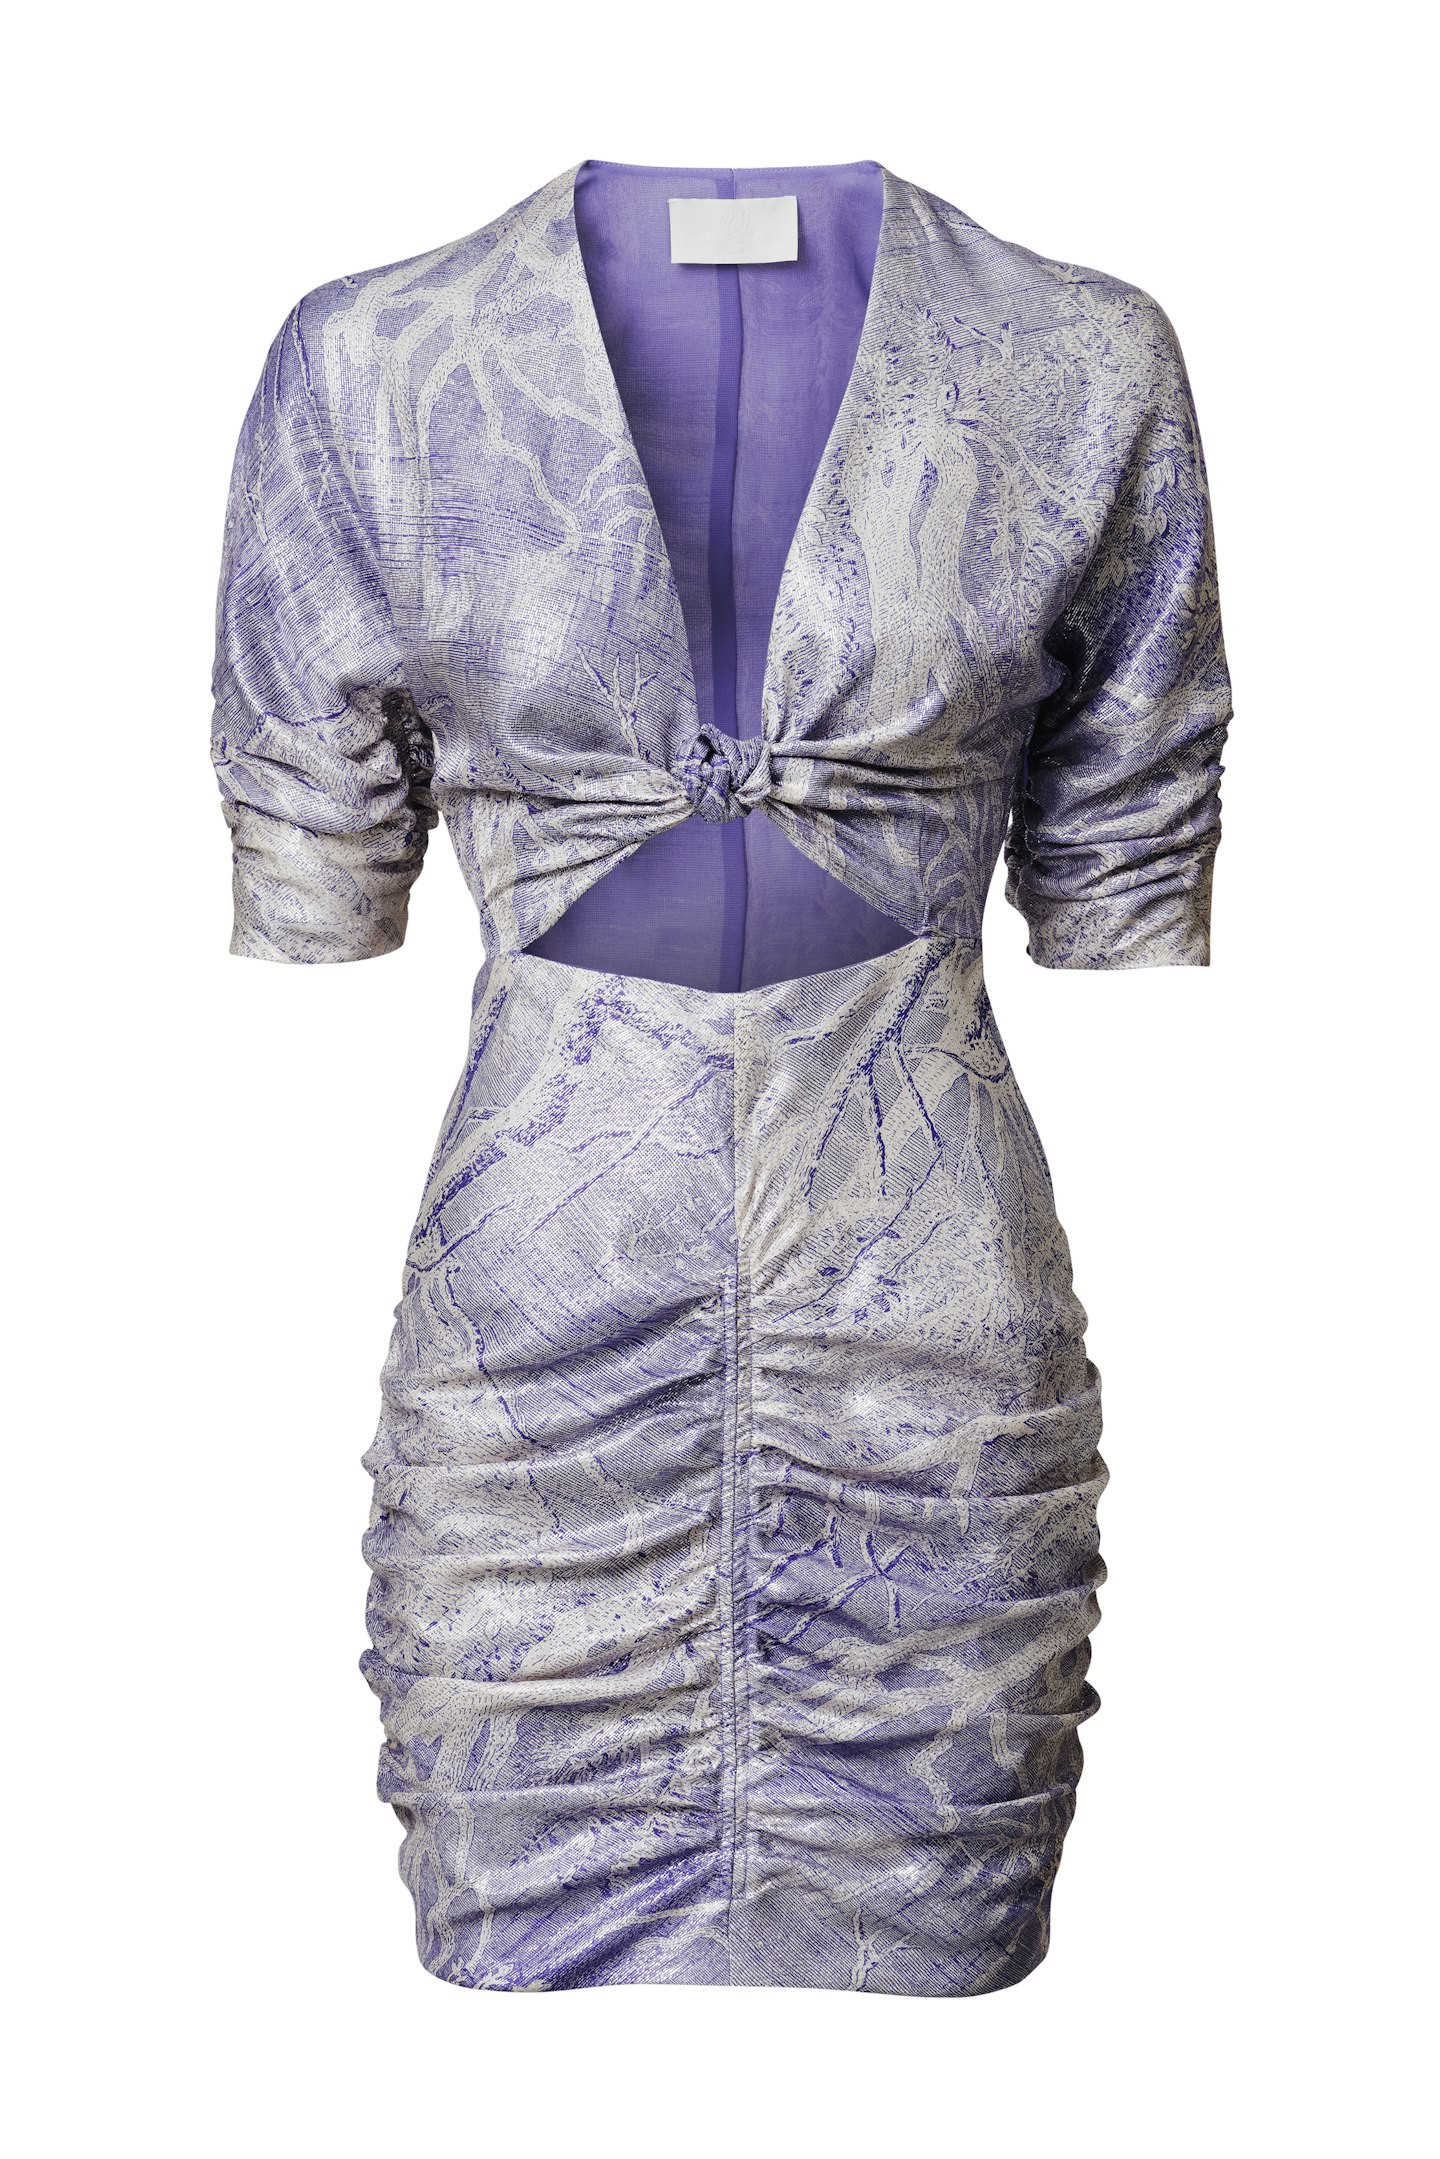 Fitted Silk-Blend Dress, £79.99